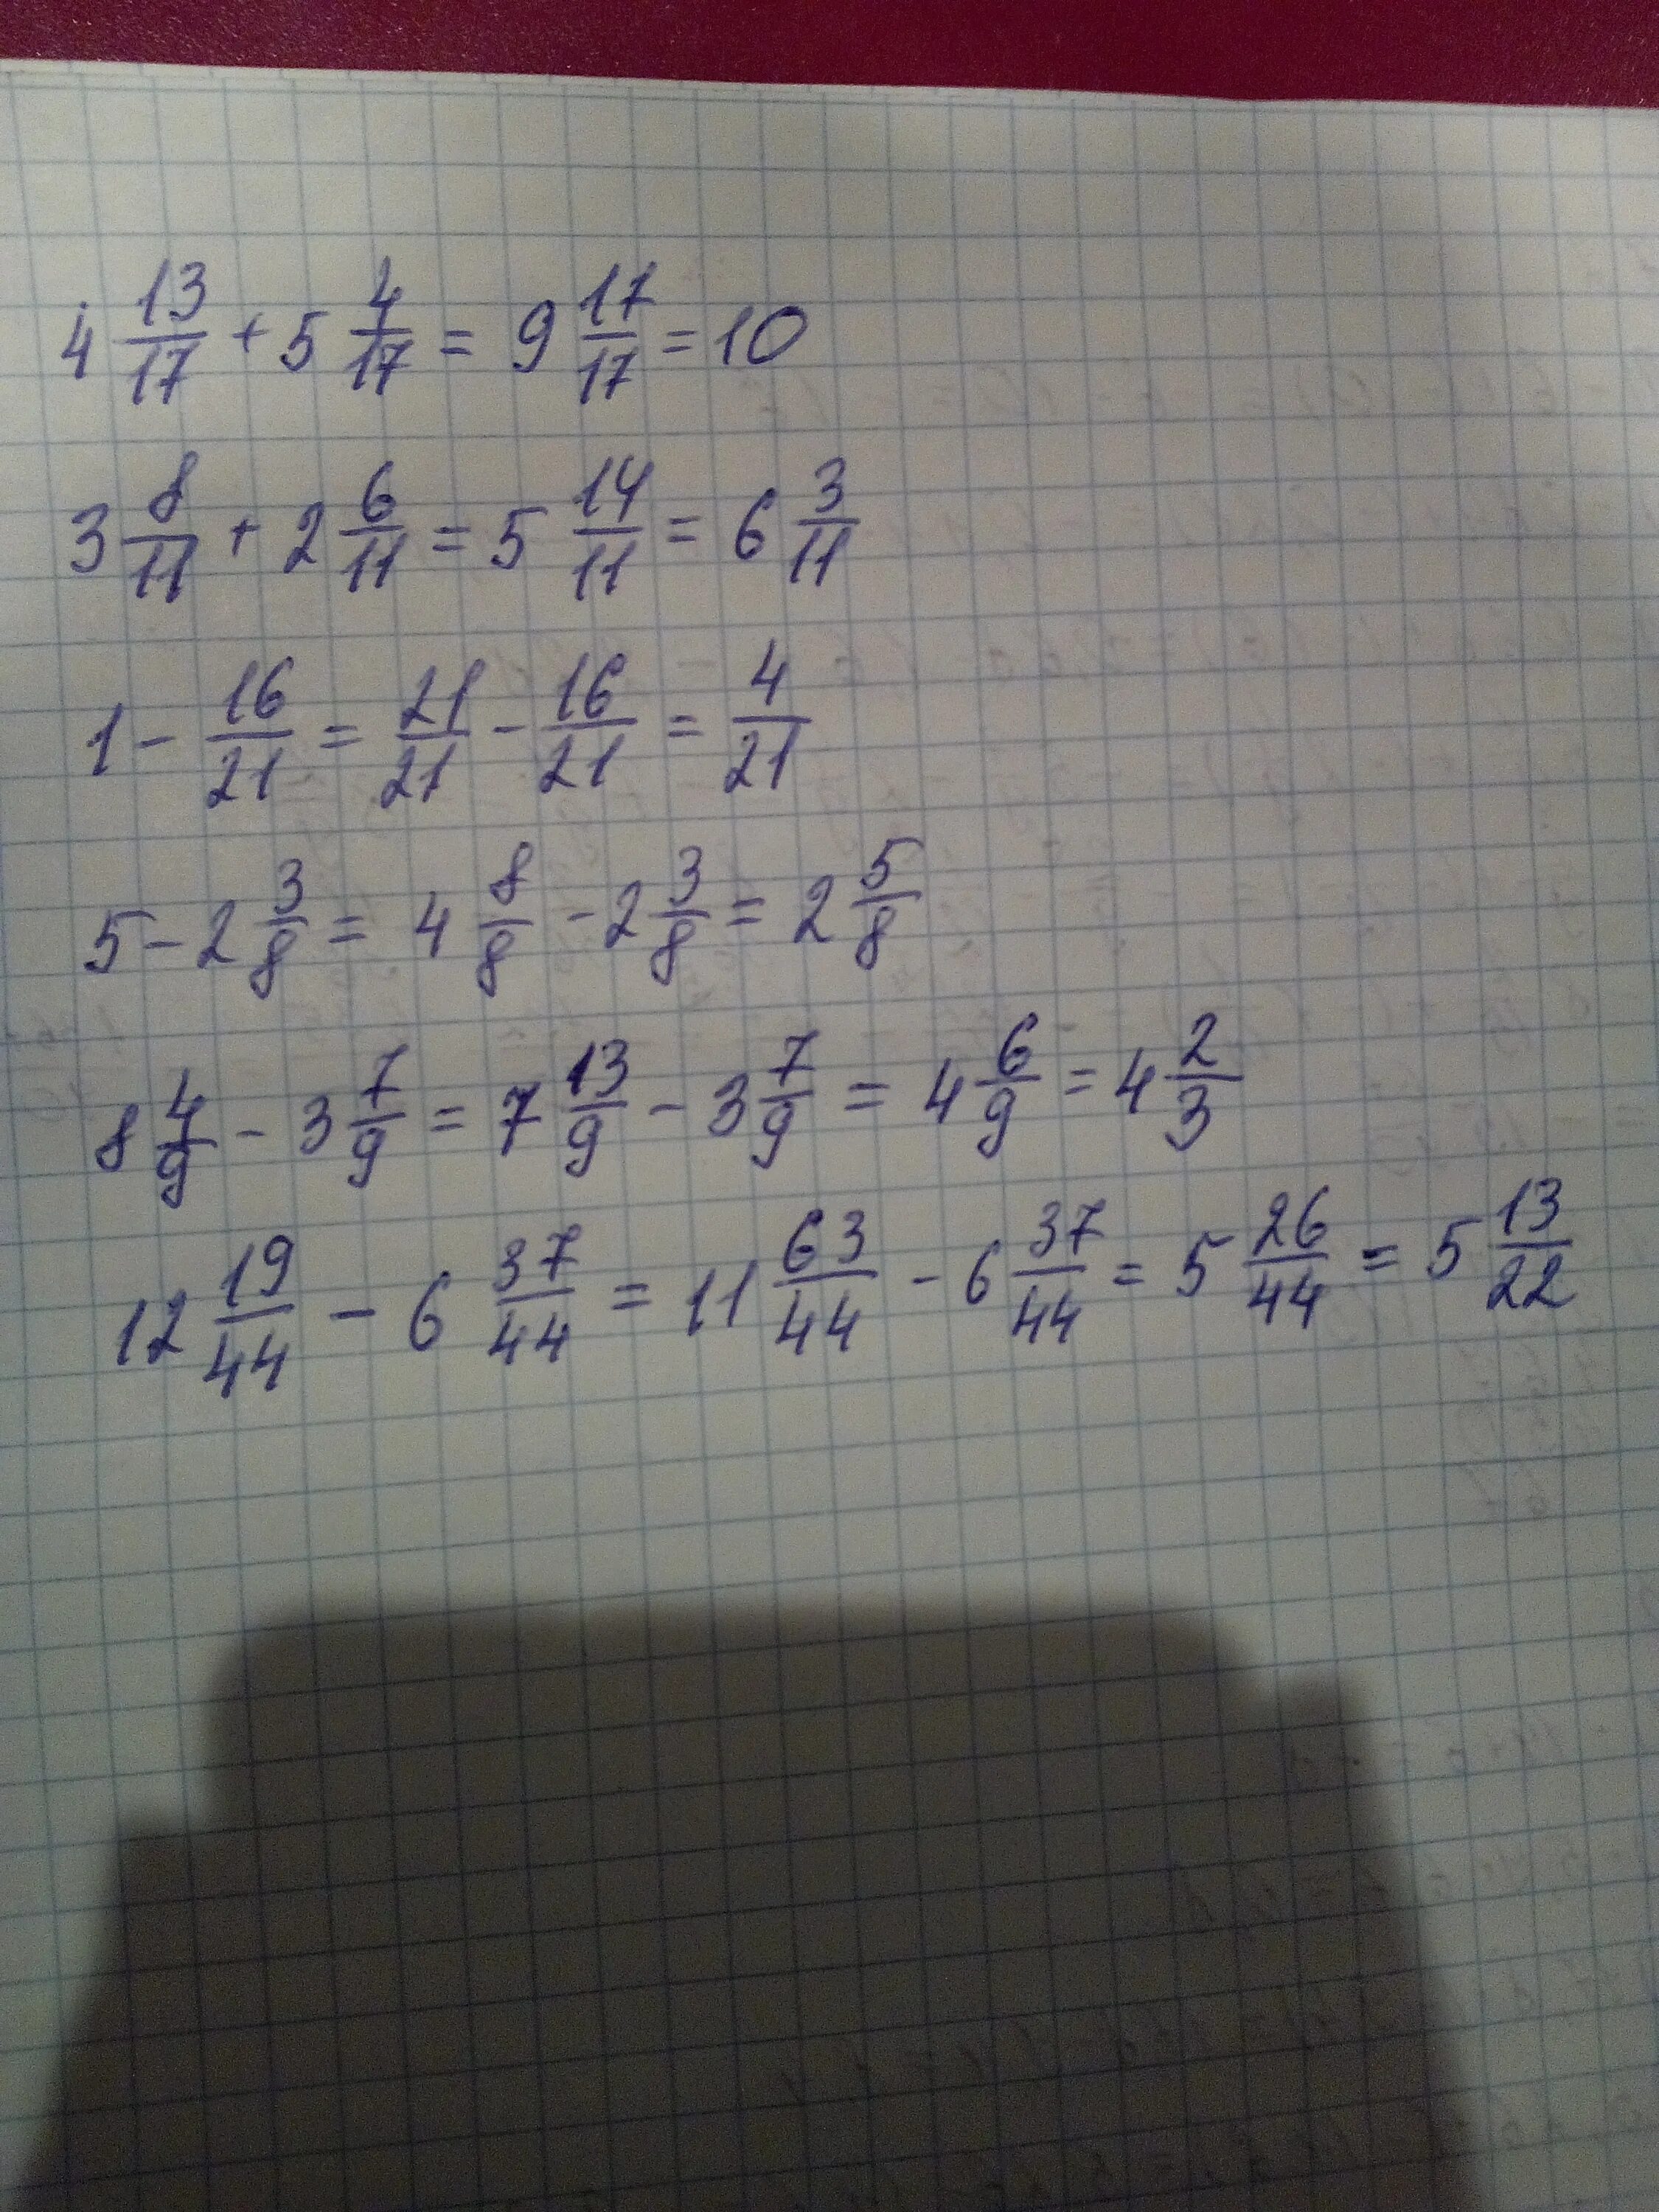 Х 8 43 8. (2/5-6,6) :(1 1/4- 11/3) Решение. (6 3/4-5 2/5) +(3 4/5+2 1/5) Решение. (1/2+2/3):5/6-12*(1/2-2/3)= Решения. (9-2 3/11)+(2+1 9/11) Решение.